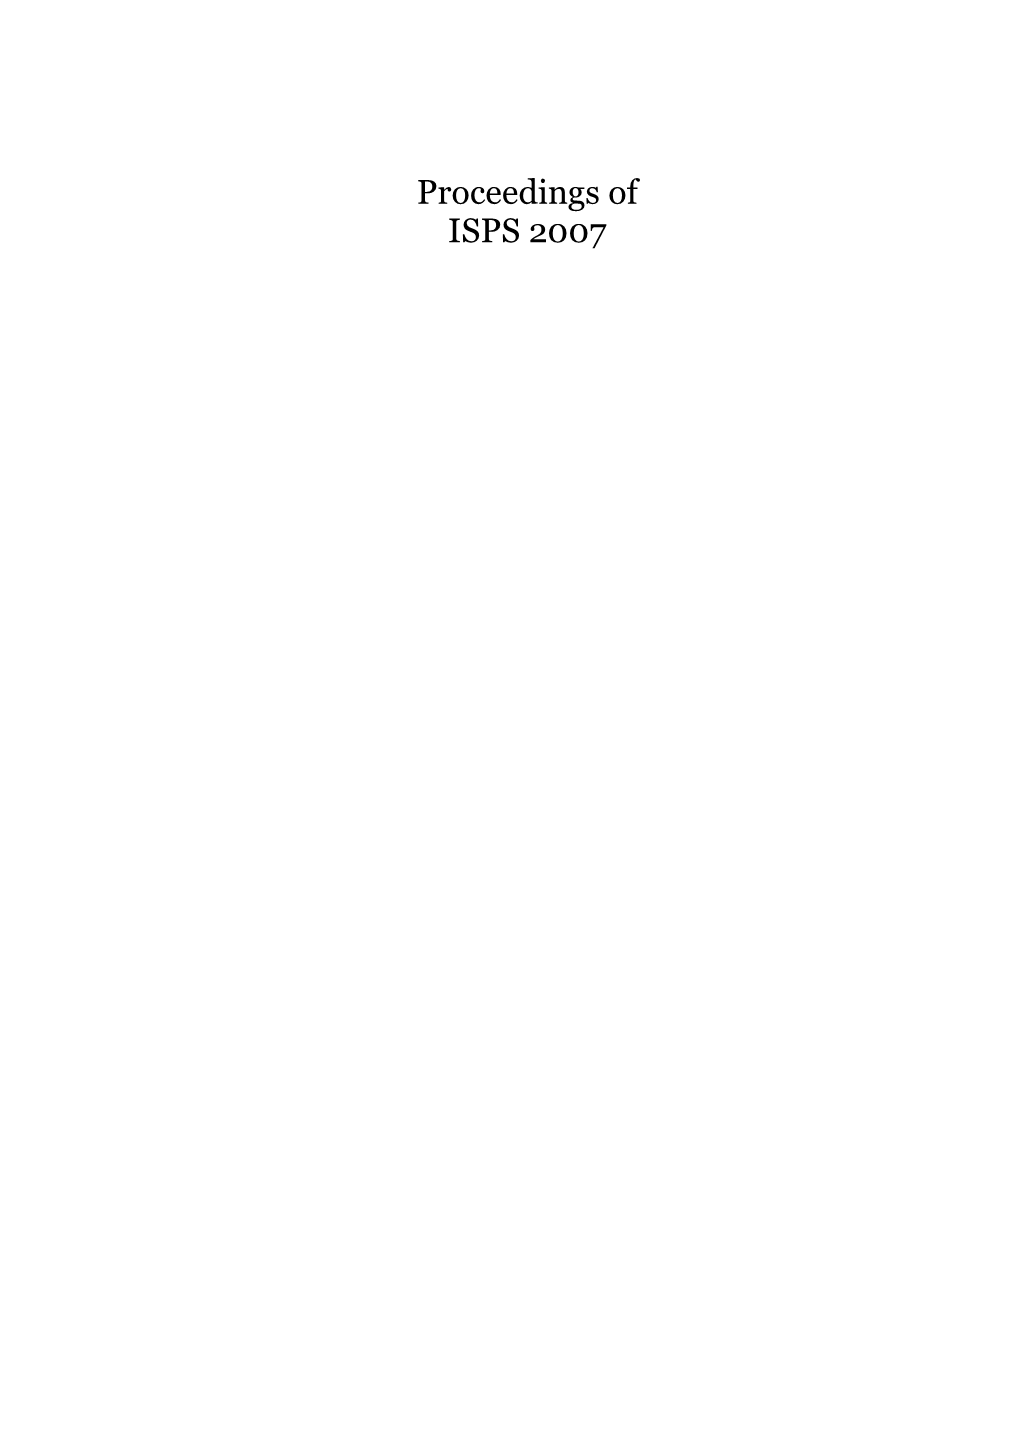 Proceedings of ISPS 2007